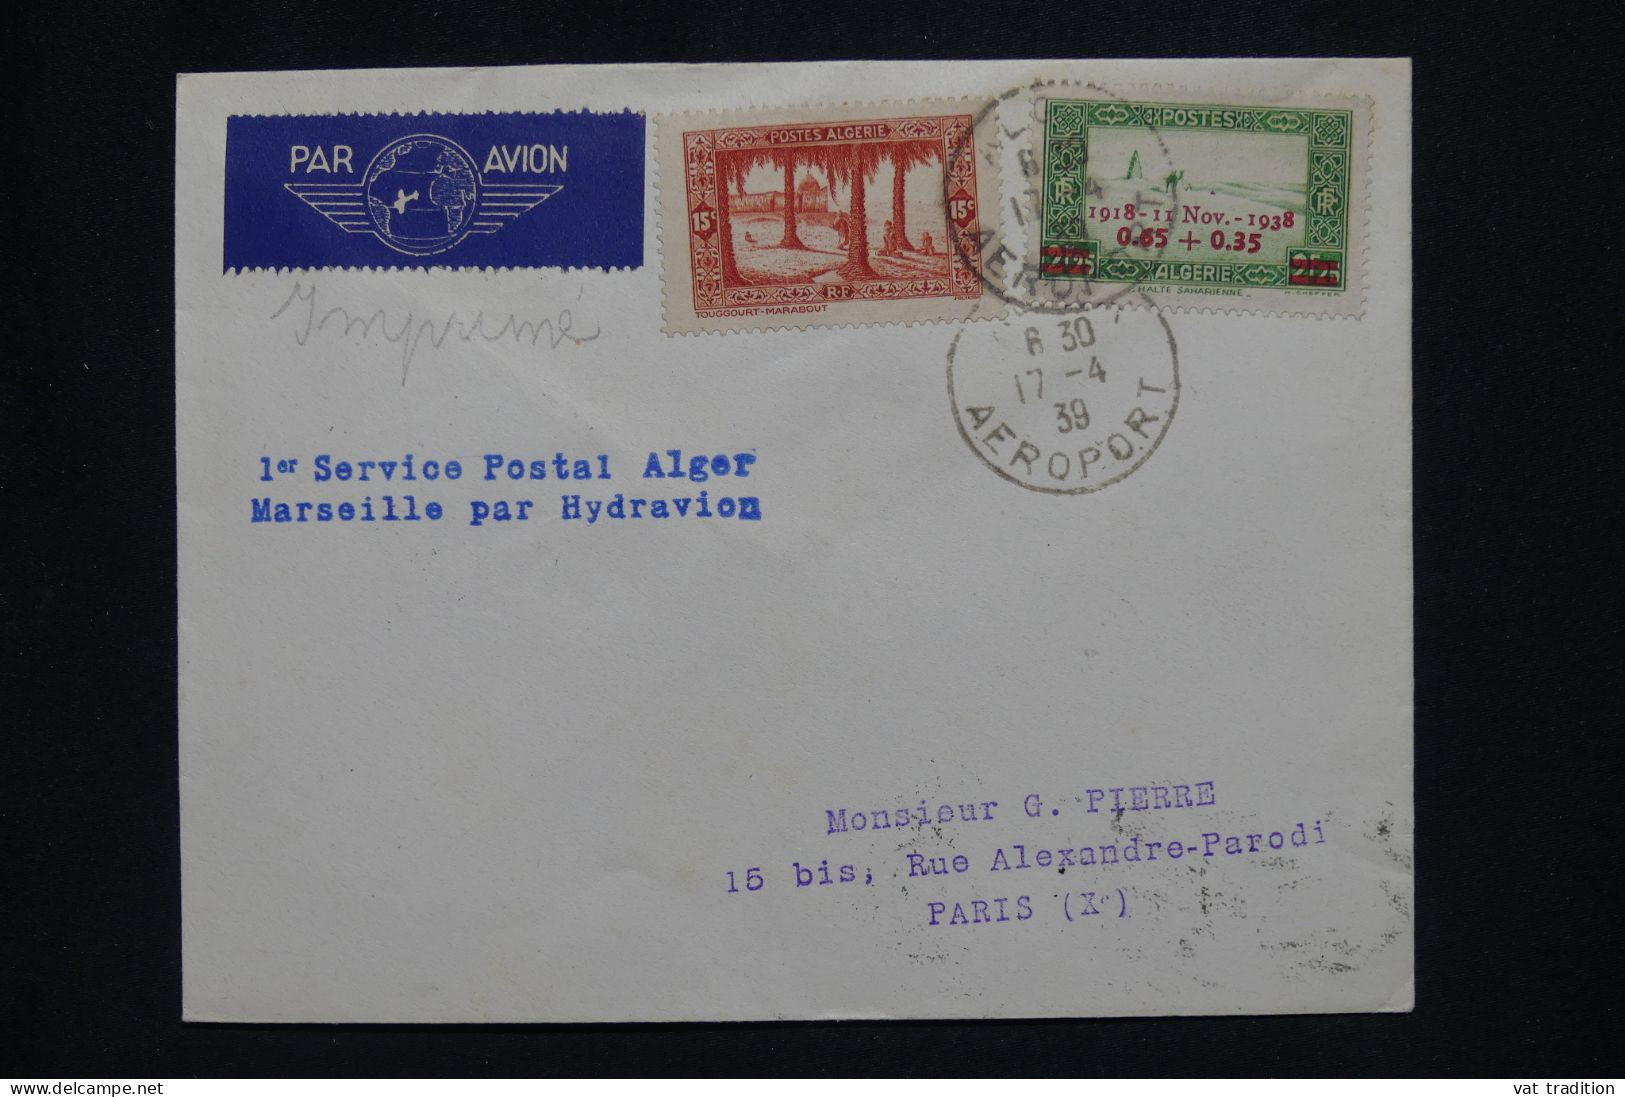 ALGERIE Française - Lettre Par Avion - Alger Marseille Par Hydravion - 1939 - A 516 - Airmail